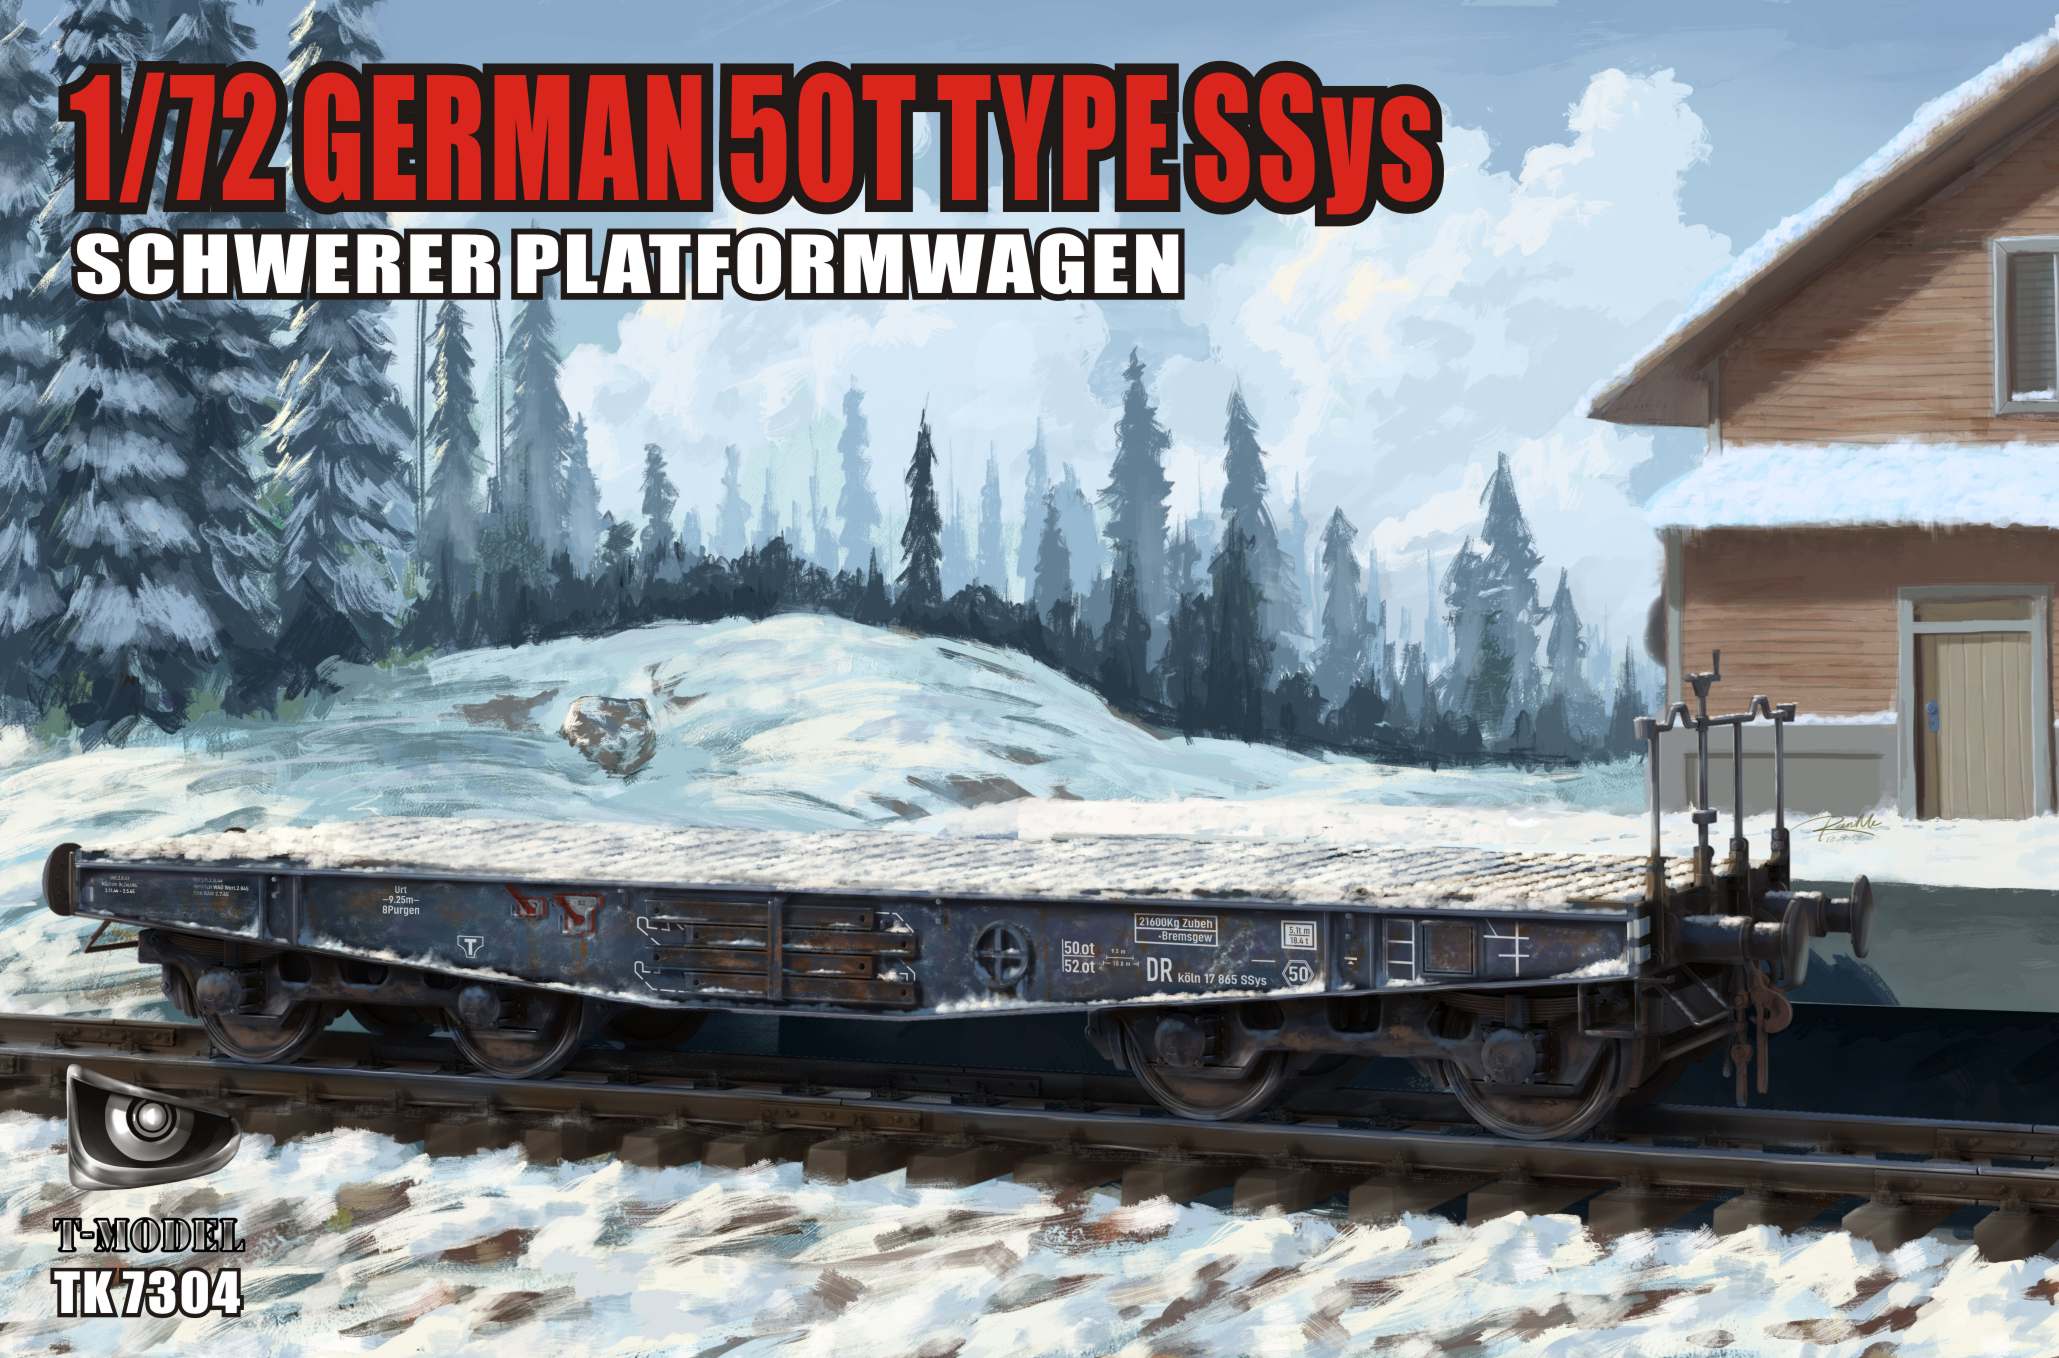 Schwere Plattformwagen Type SSys 50